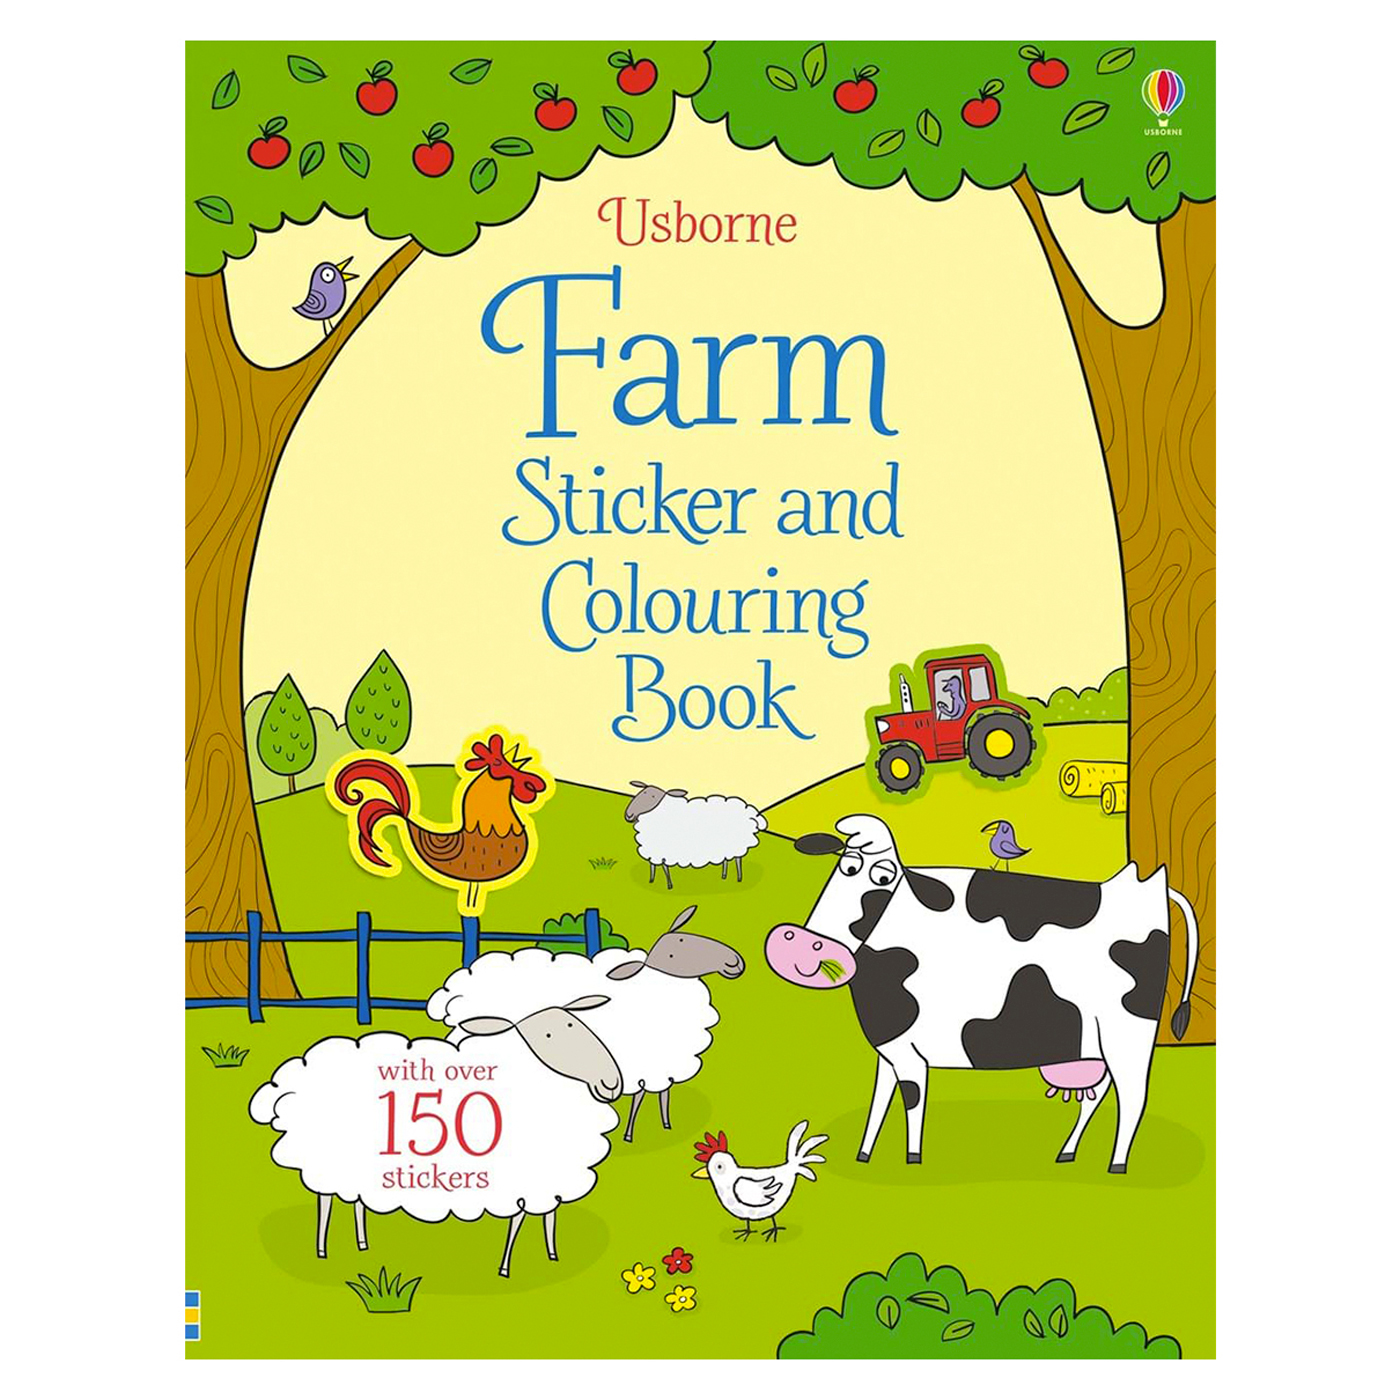  Farm Sticker and Colouring Book